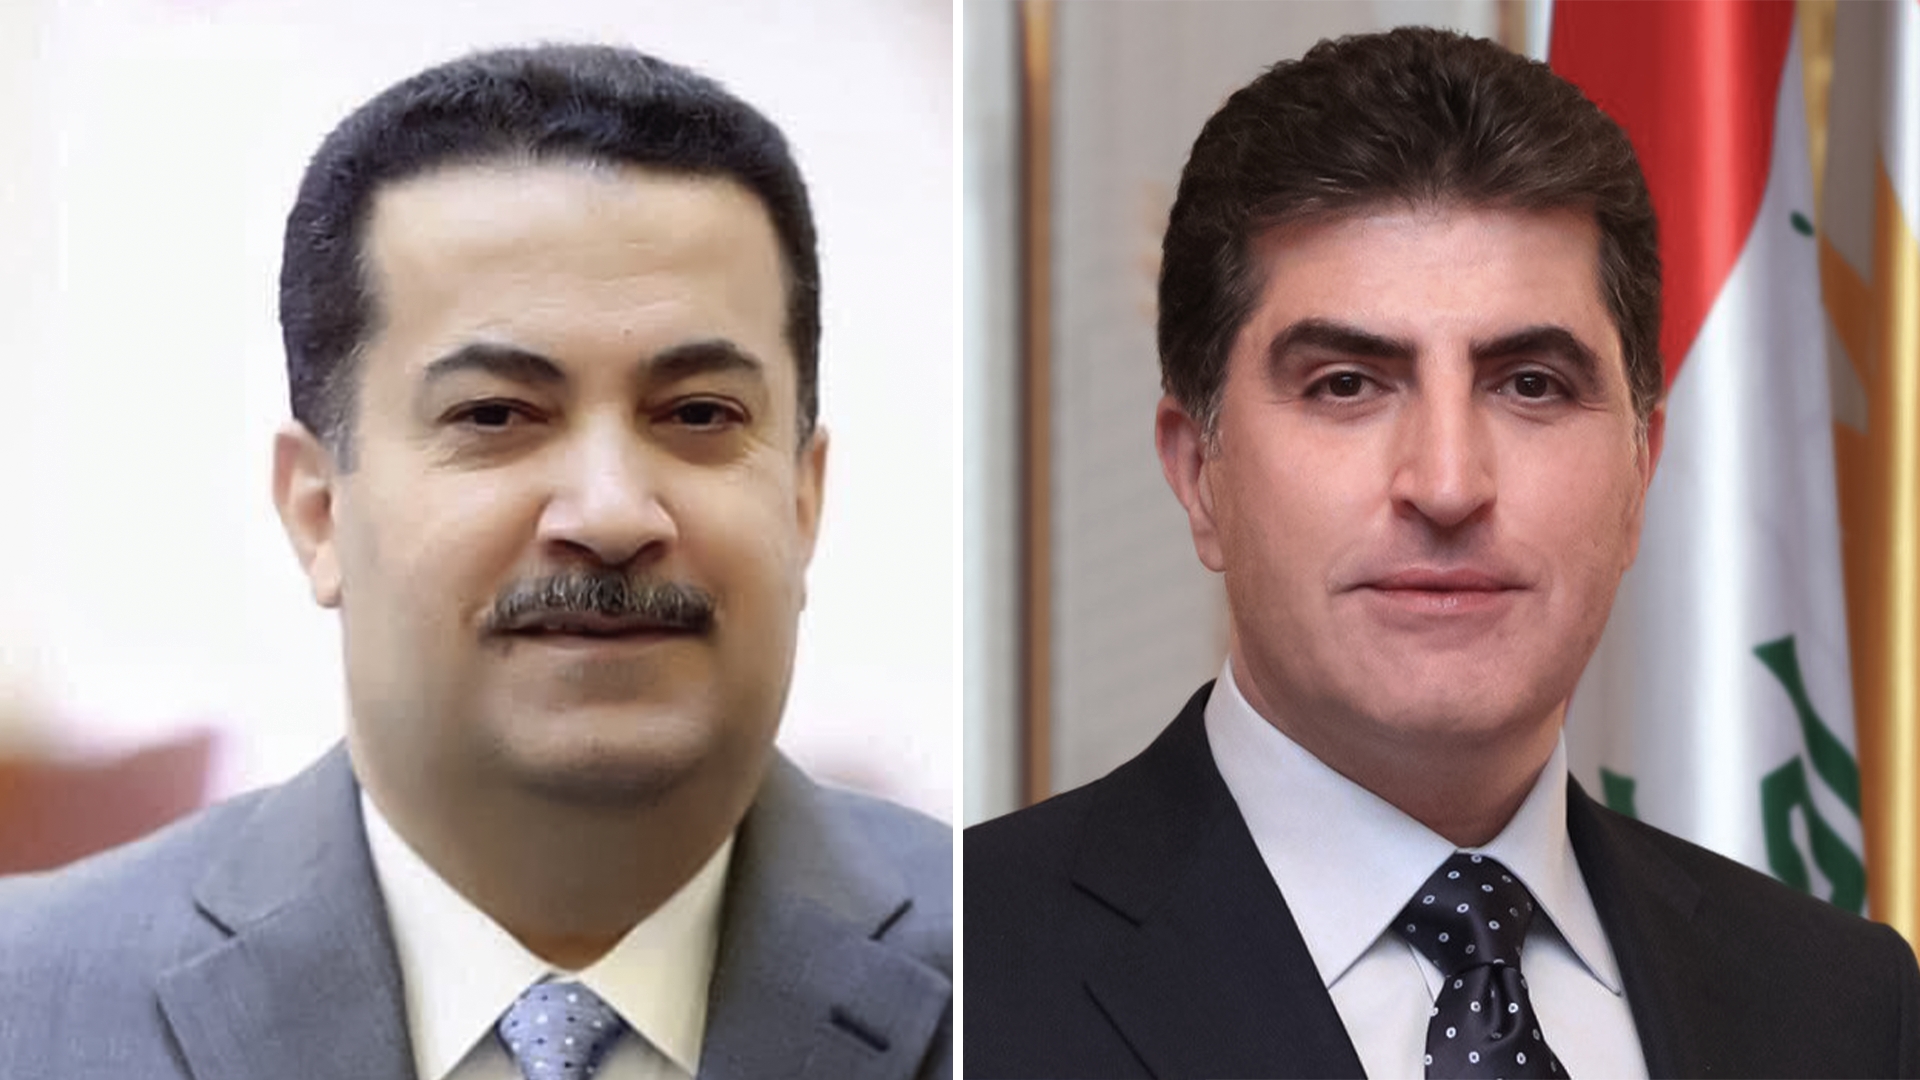 President Nechirvan Barzani and Prime Minister Al-Sudani discuss political process in Iraq